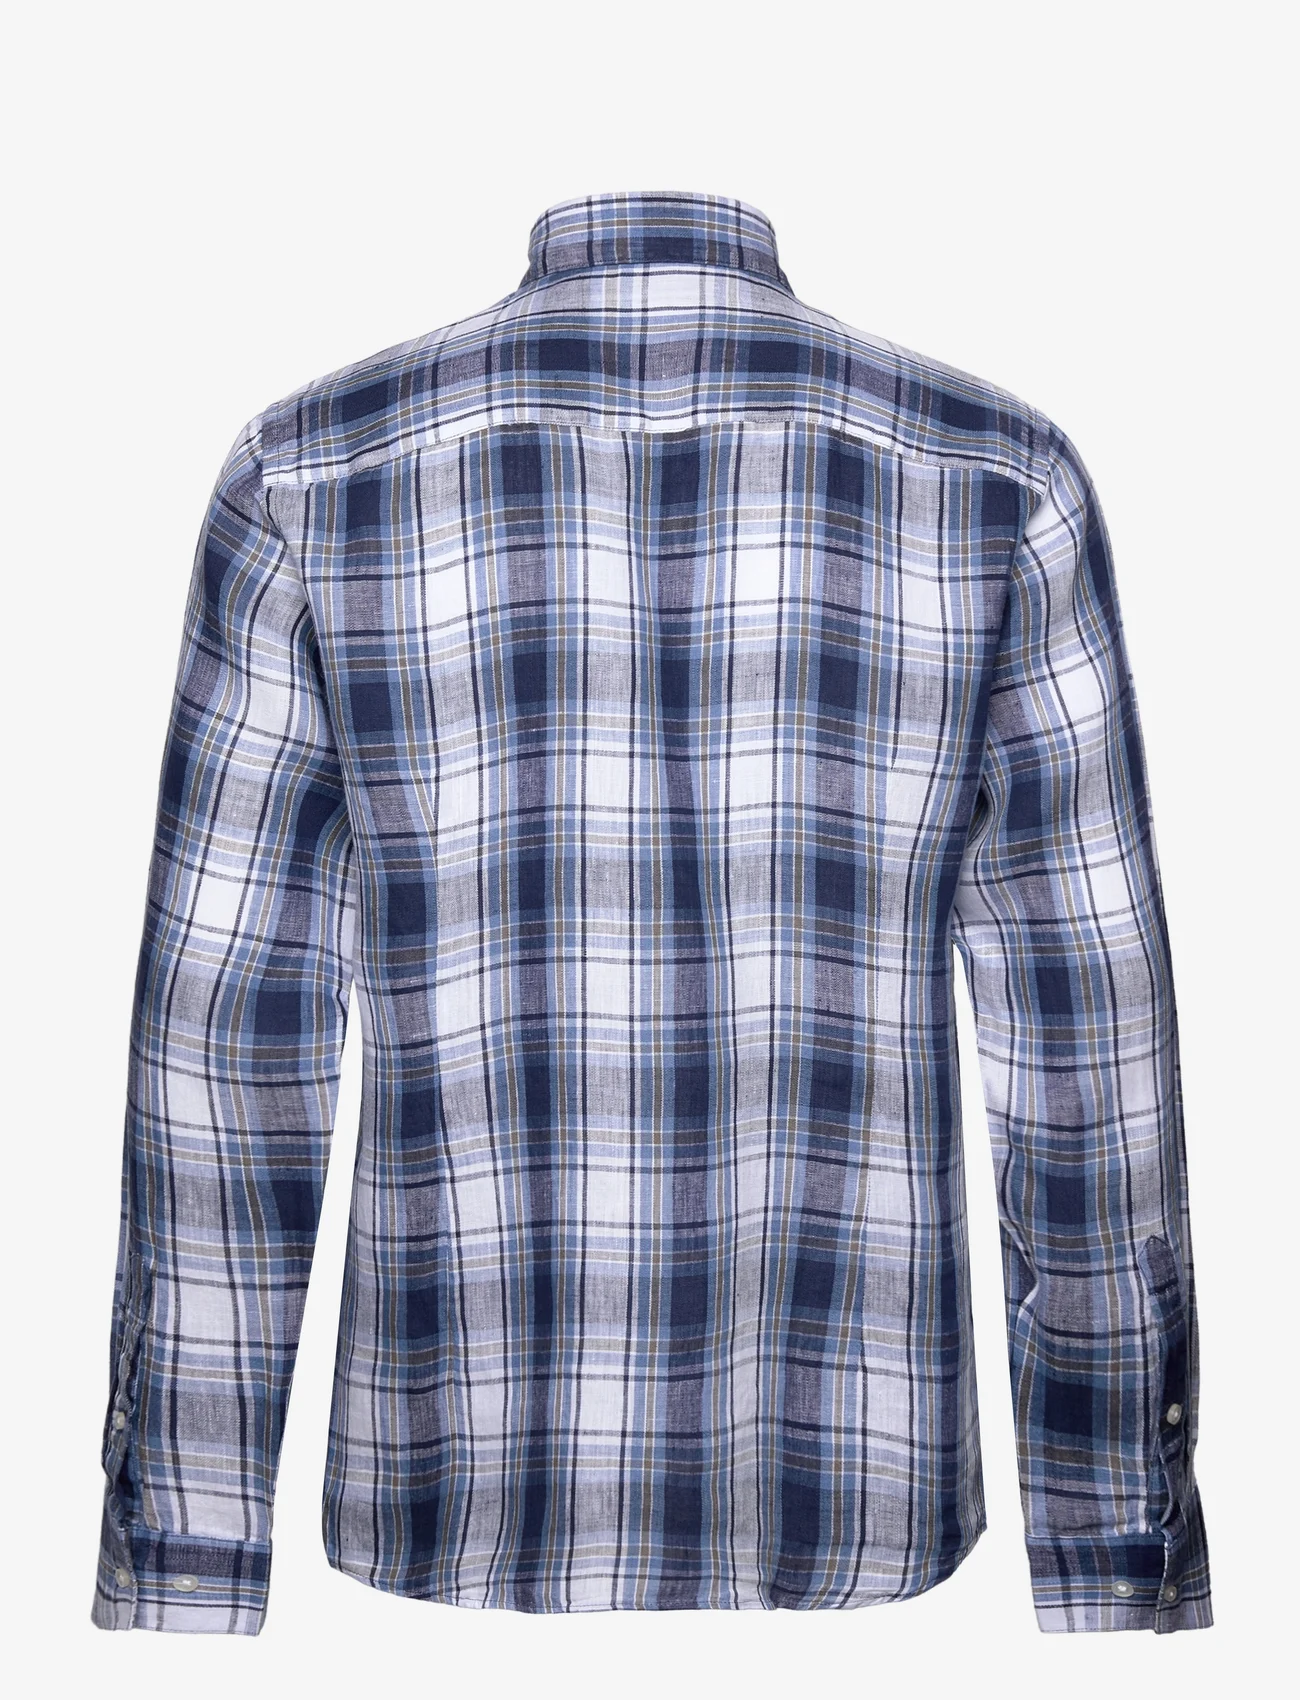 Bruun & Stengade - BS Leganés Casual Modern Fit Shirt - leinenhemden - blue - 1